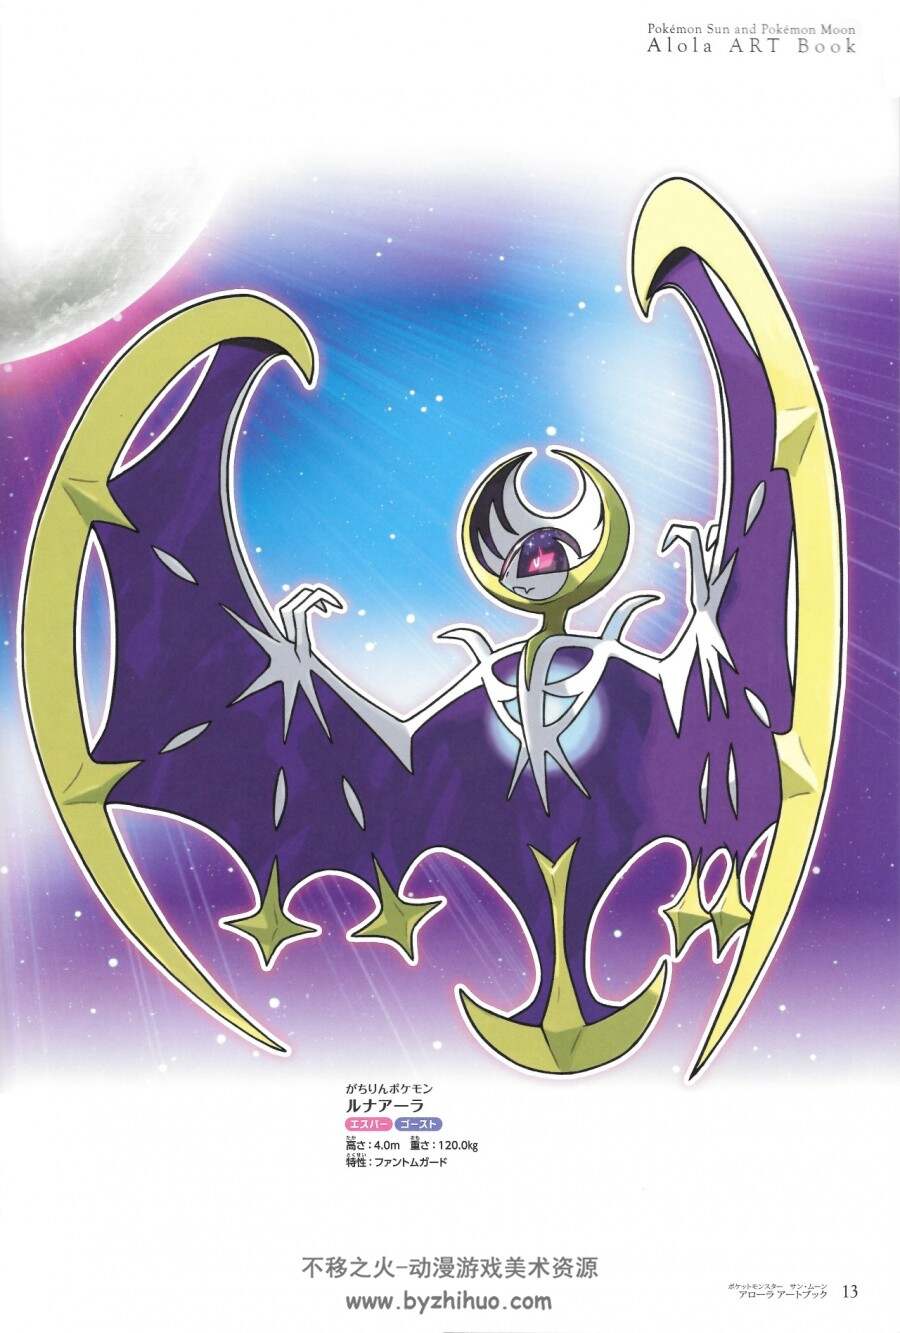 Pokémon Art 精灵宝可梦 日月设定画集 33P